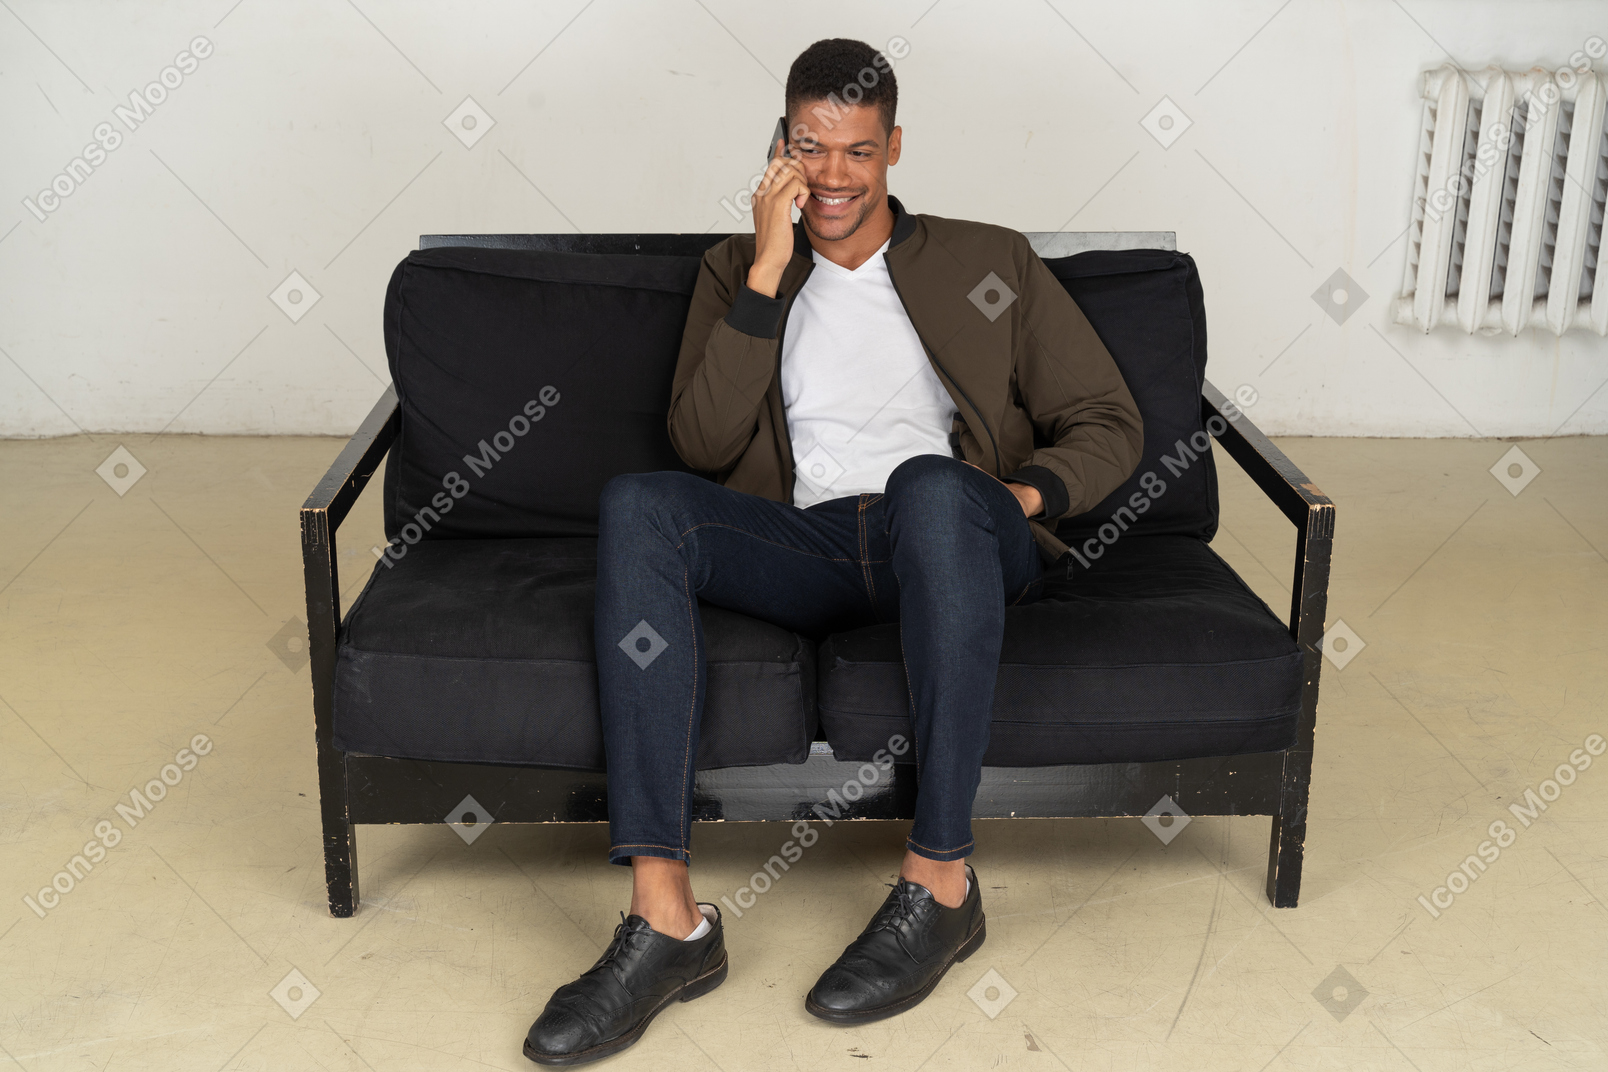 Vista frontale di un giovane sorridente seduto su un divano e parlando al telefono